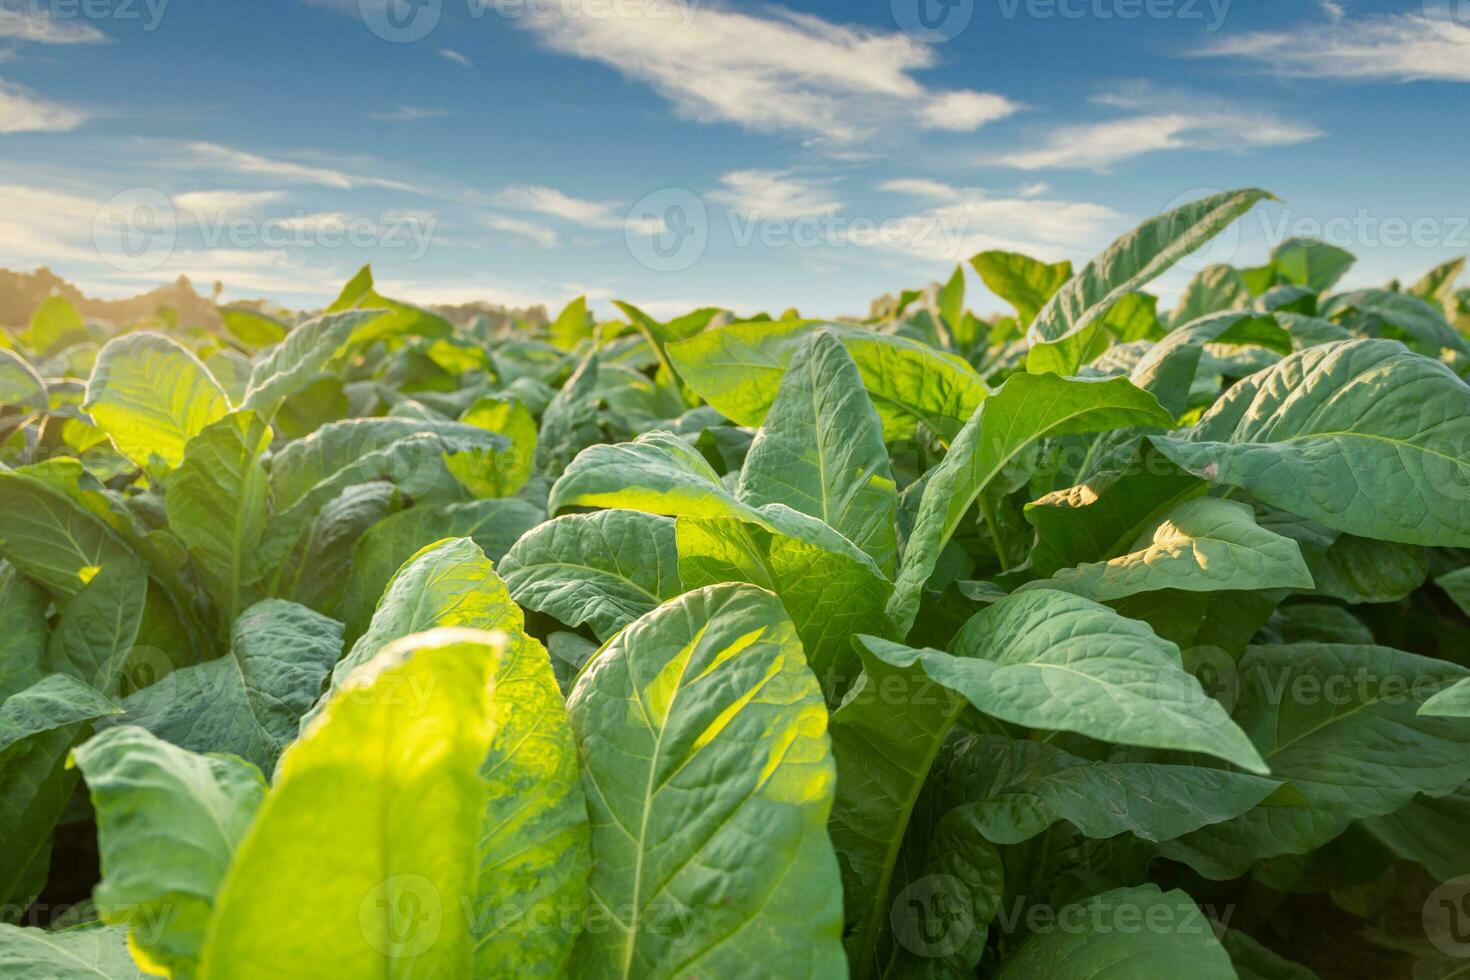 proche en haut de le tabac gros feuille cultures croissance dans le tabac plantation champ, le tabac industrie pour agriculture et exporter. photo